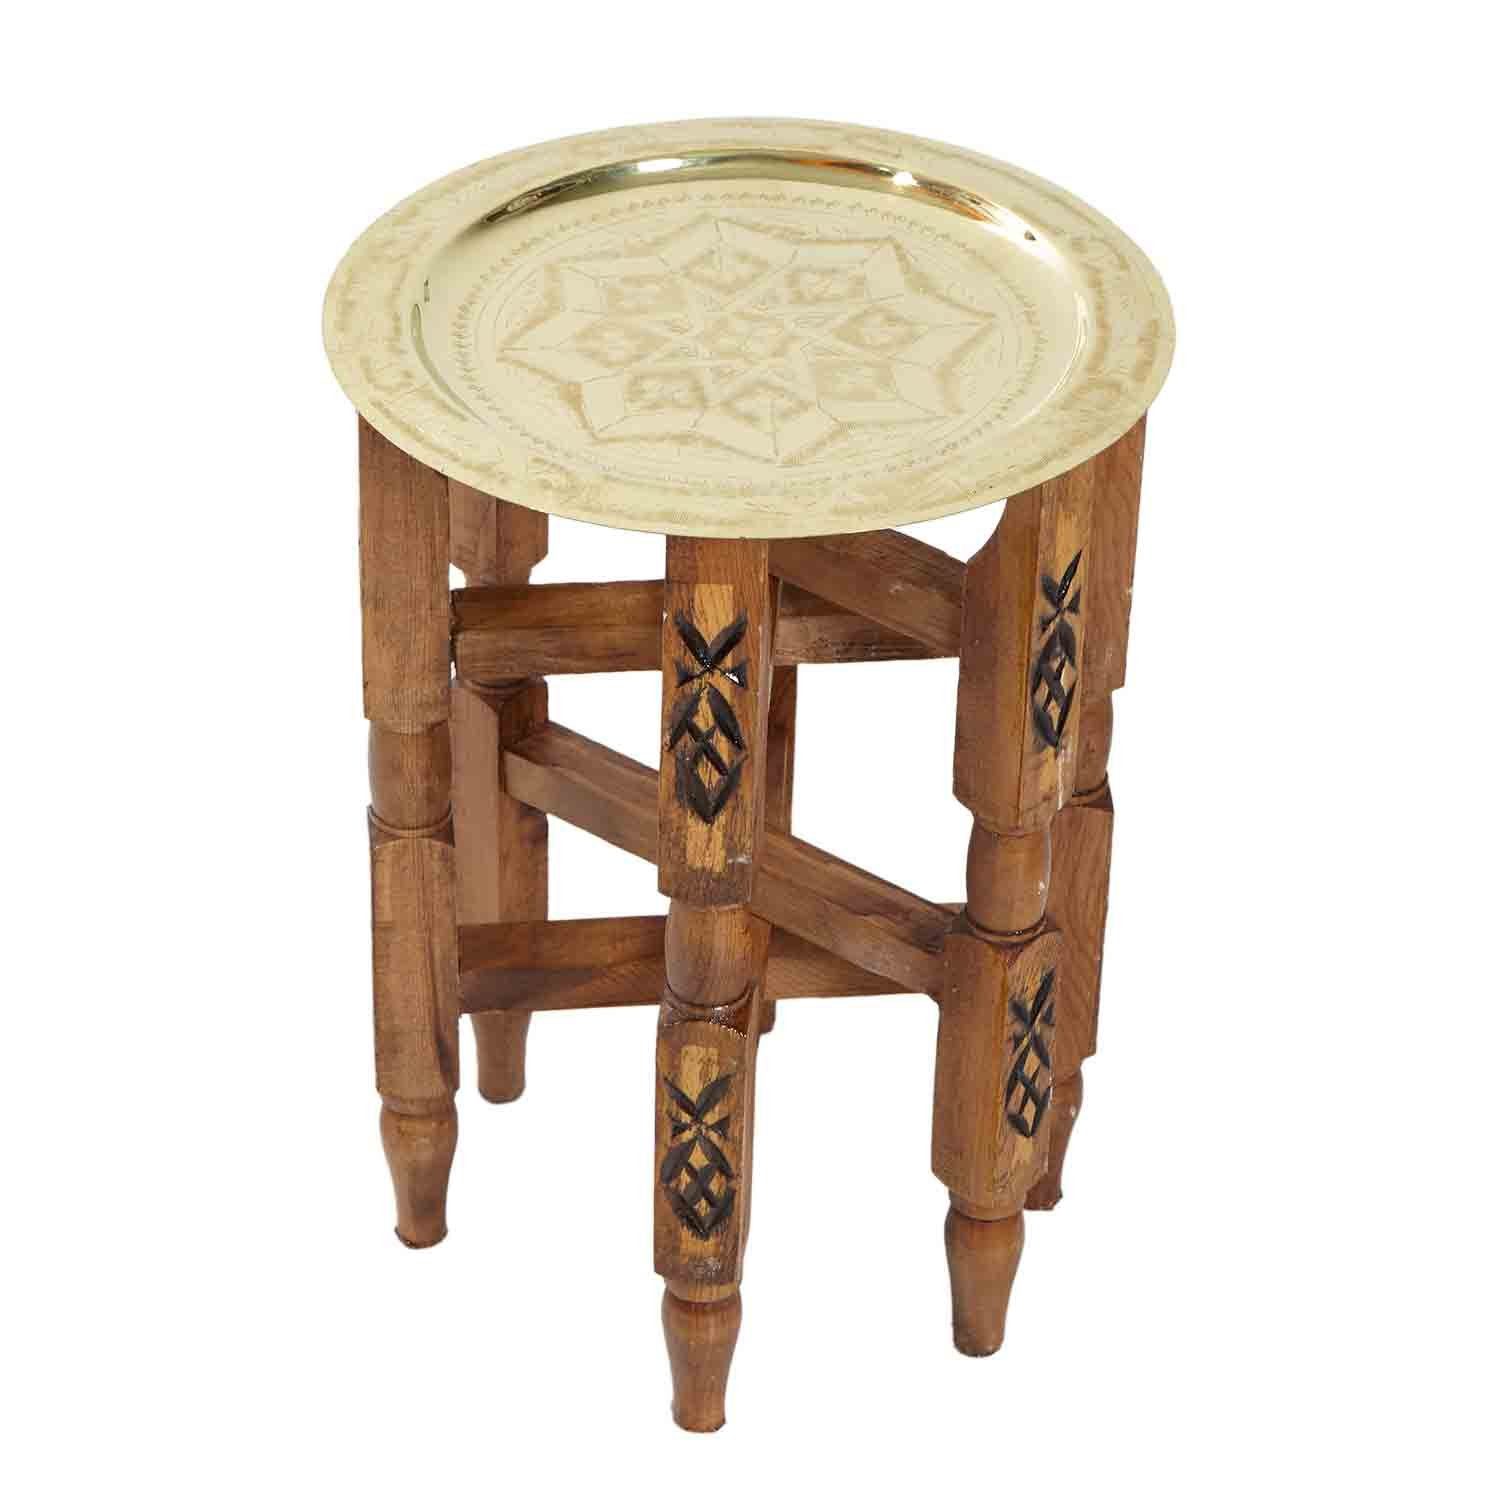 Handmade marokkanischer TA6158, Moro mit Casa Beistelltisch Karam Ø 30, - Orientalischer Teetisch Holz Messing Tablett Gold, 30 cm, Serviertablett Farbe mit Beistelltisch Tisch Handgefertigter Klapptisch